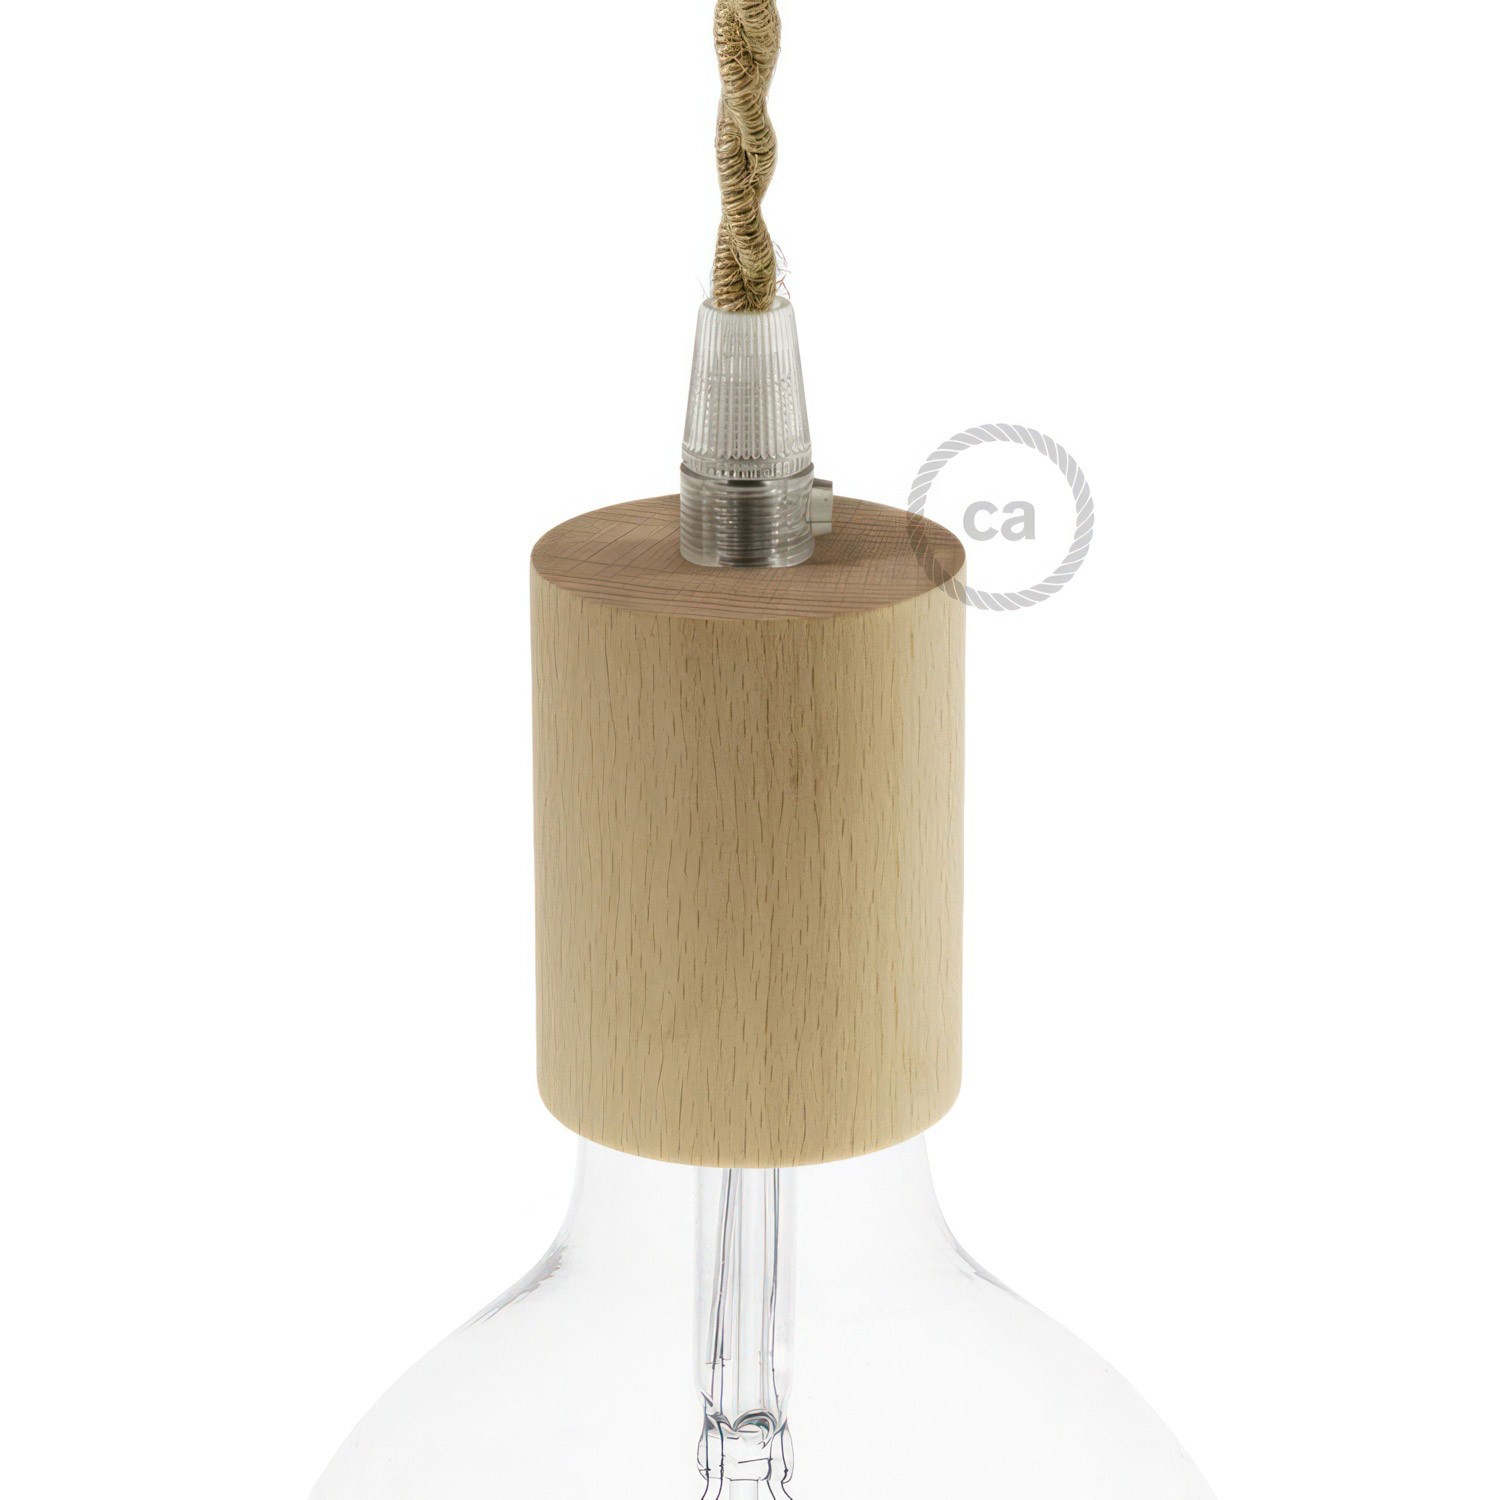 Træ E27 lampeholder kit